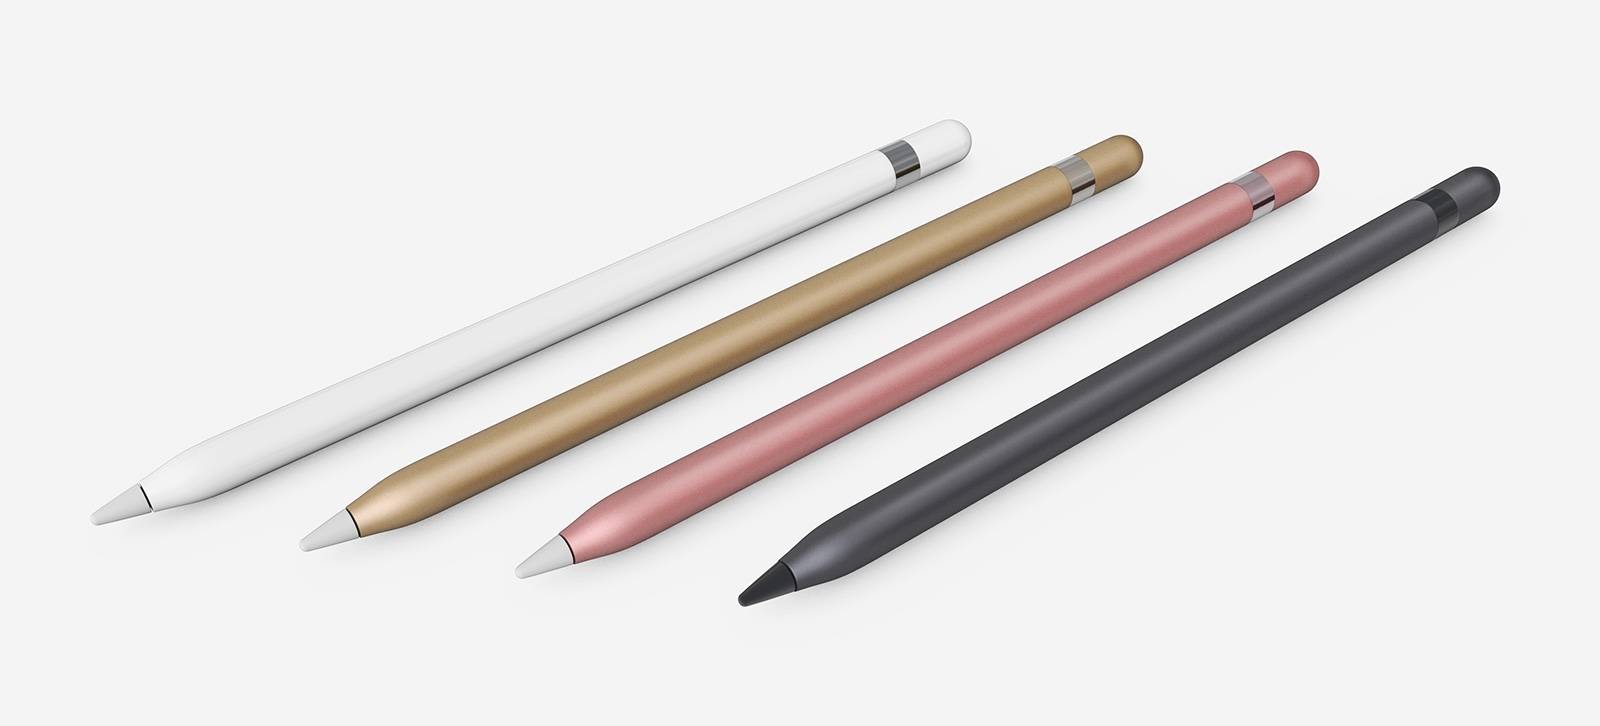 Bút Apple Pencil 2 sắp ra mắt cùng iPad Pro 2018 quá thú vị